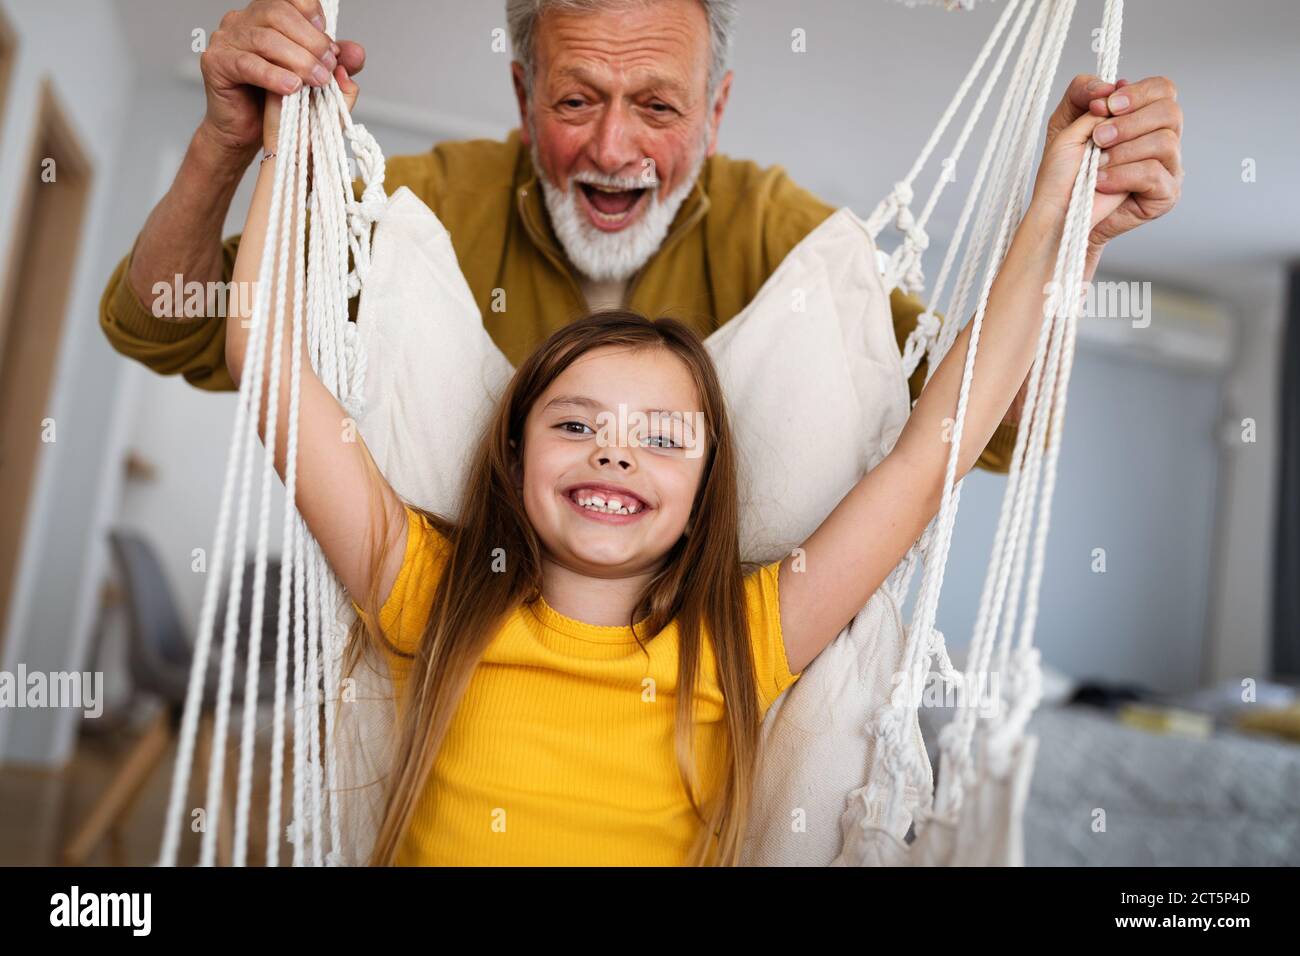 Happiness family love fun grandparent grandchild concept Stock Photo